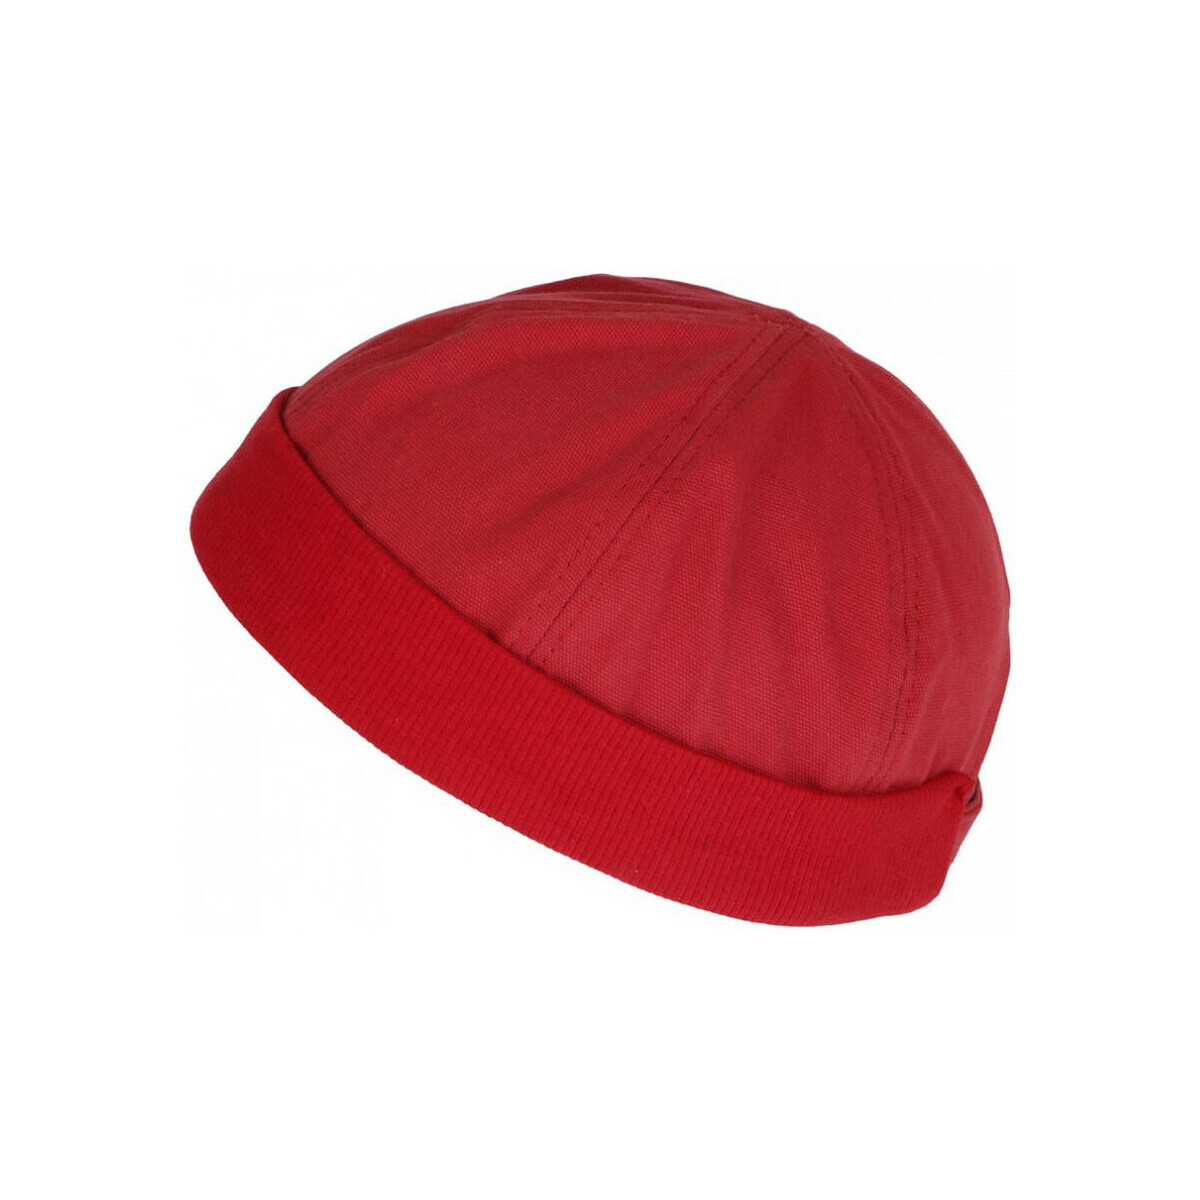 Accessoires textile Bonnets Nyls Création Bonnet  Mixte Rouge